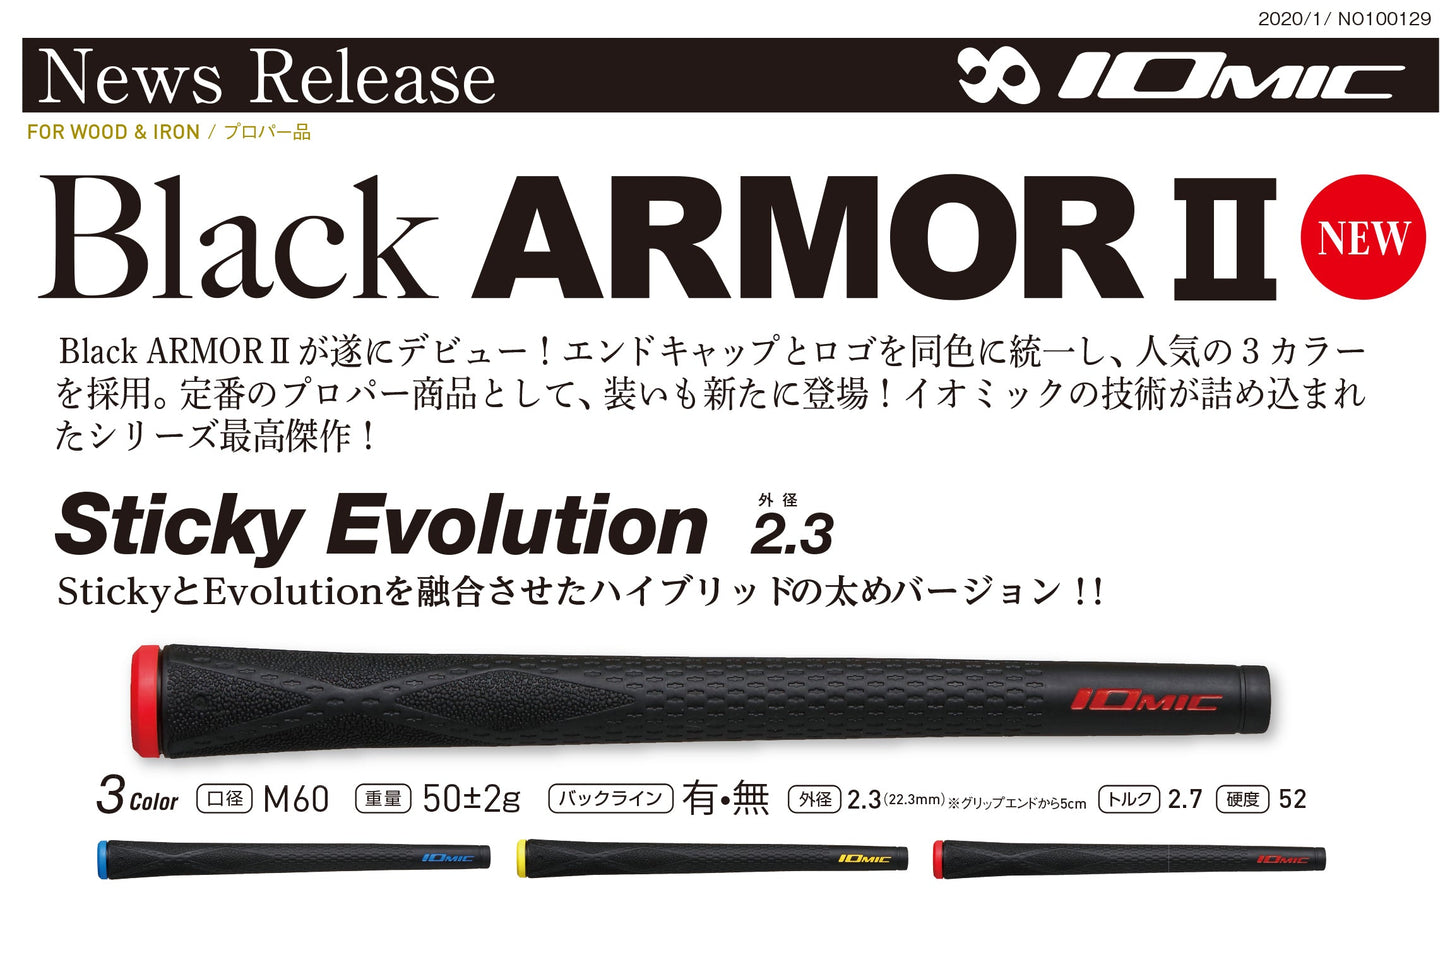 (PXG)Black Ops0311ドライバー×（fujikura）PXG Pro Series